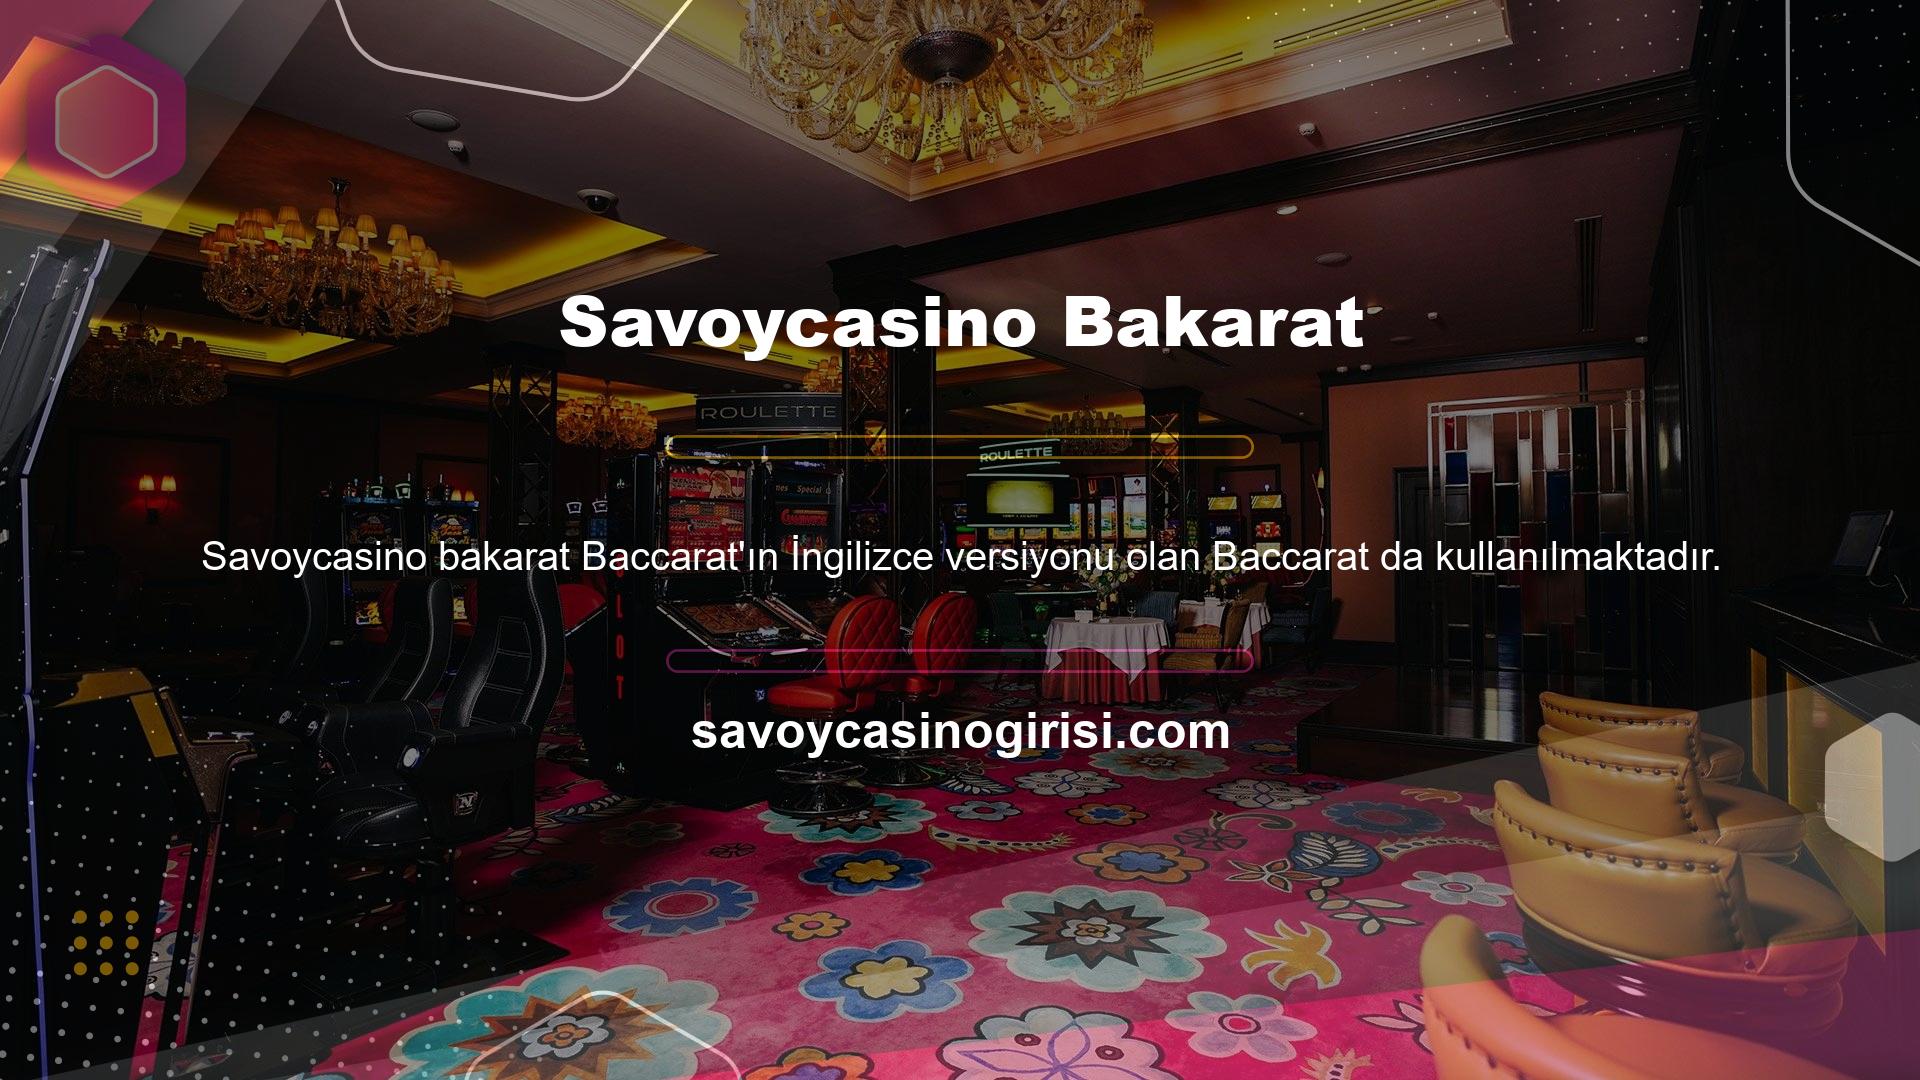 Baccarat, Savoycasino oyun sitesi tarafından sunulan canlı casino oyunlarından sadece bir tanesidir